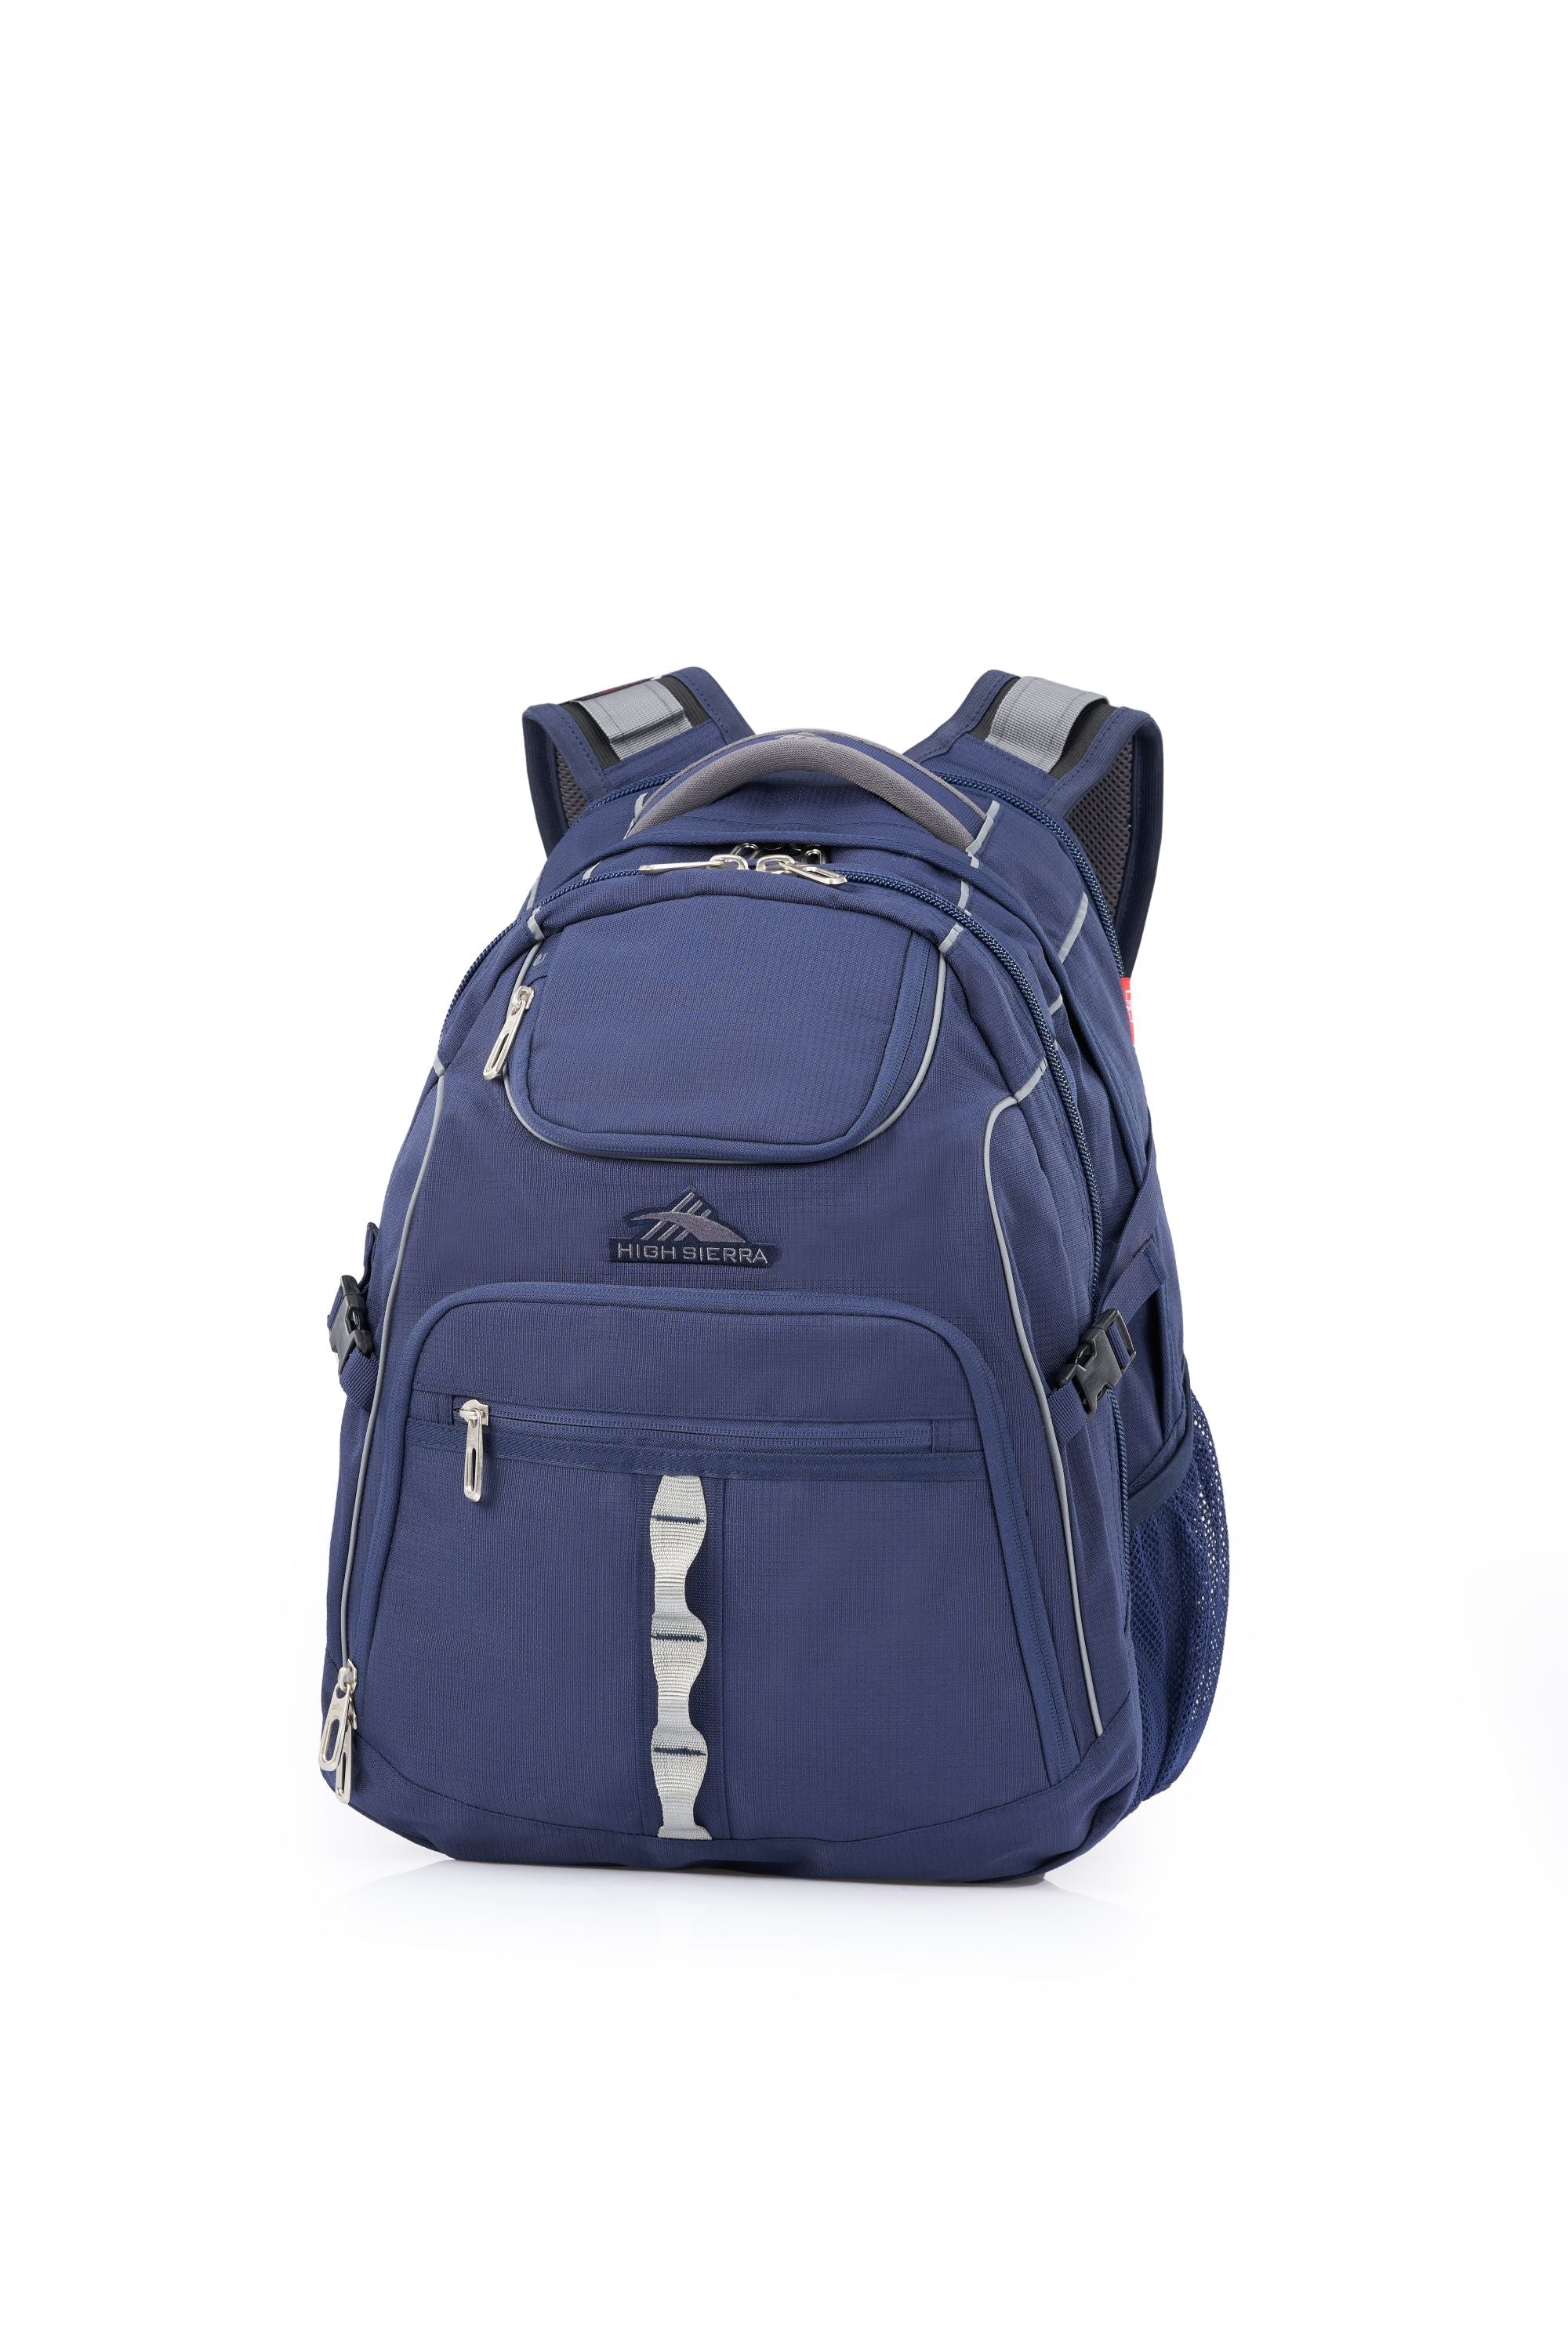 High Sierra - Access 3.0 Eco Backpack - Marine Blue-1